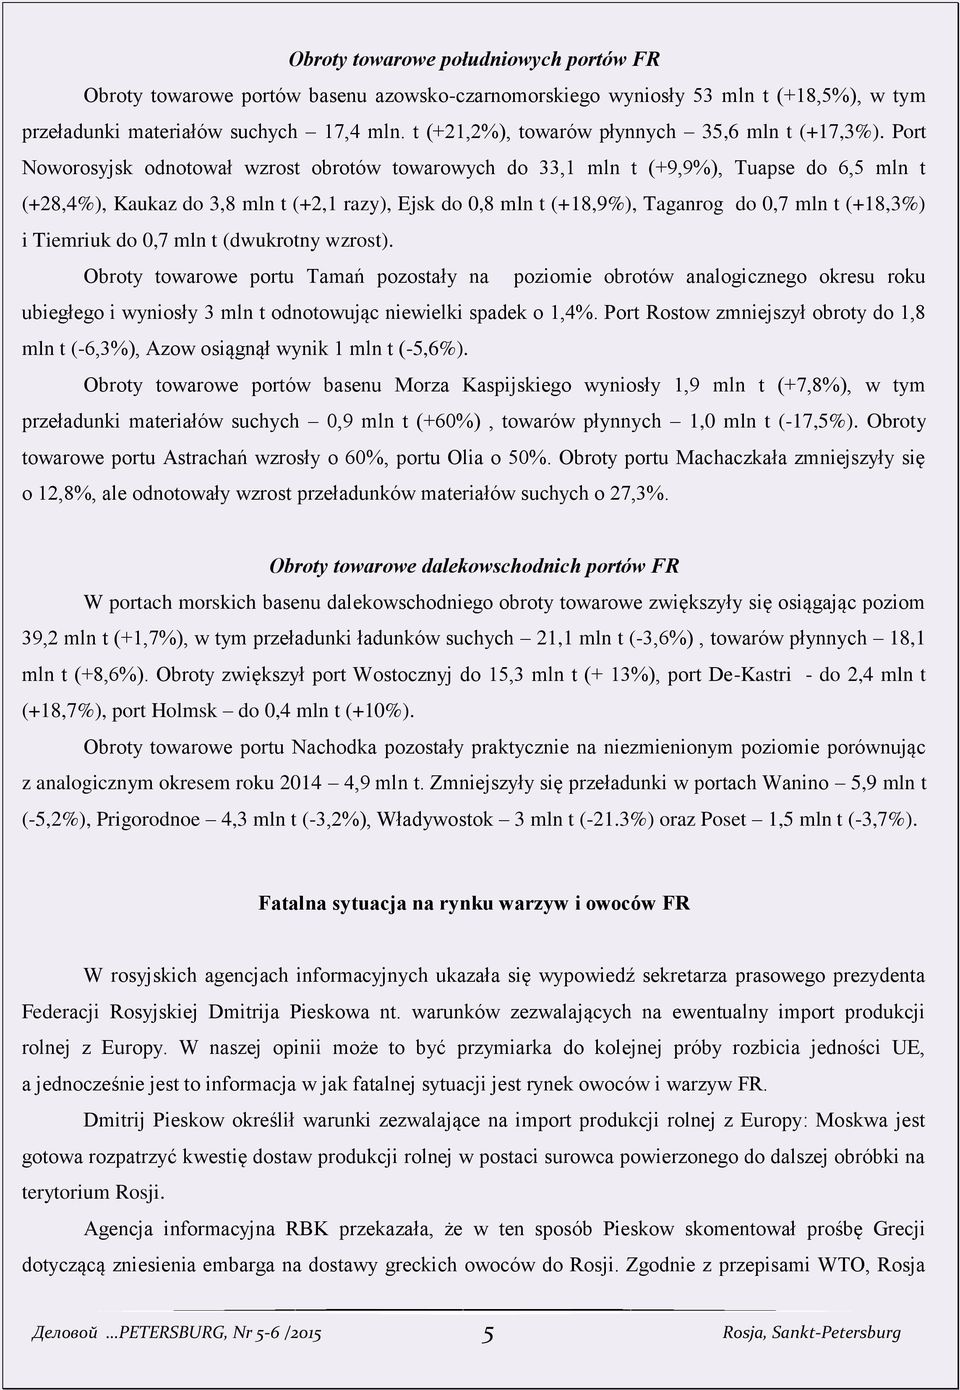 Port Noworosyjsk odnotował wzrost obrotów towarowych do 33,1 mln t (+9,9%), Tuapse do 6,5 mln t (+28,4%), Kaukaz do 3,8 mln t (+2,1 razy), Ejsk do 0,8 mln t (+18,9%), Taganrog do 0,7 mln t (+18,3%) i